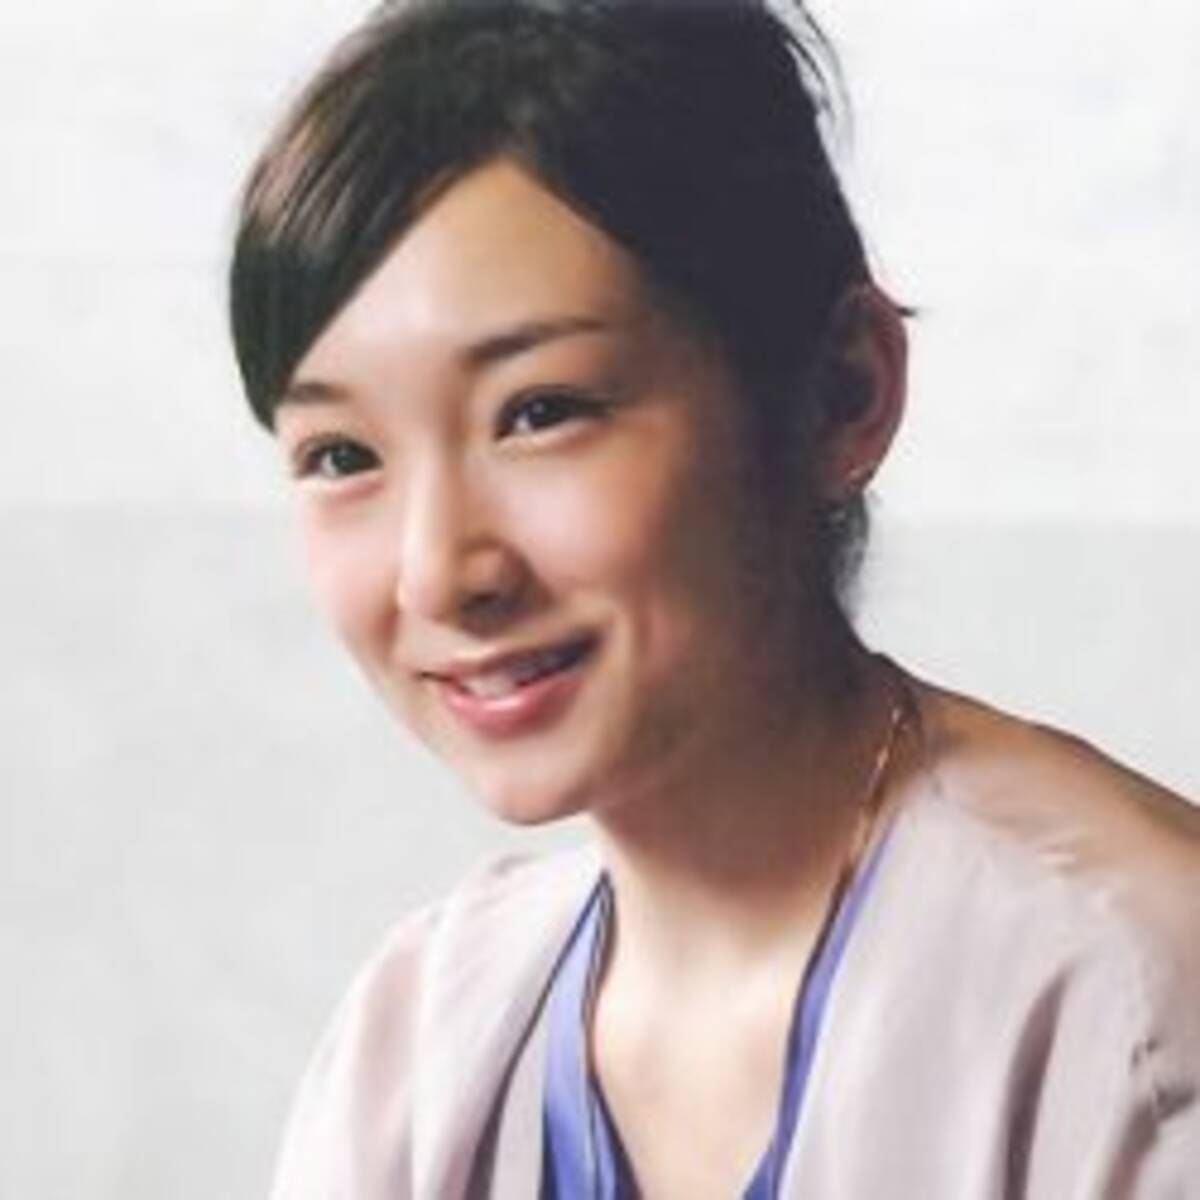 加護亜依 元カレは有名俳優 暴露に 目の前で別の女とハメてた男 正体への憶測 21年5月21日 エキサイトニュース